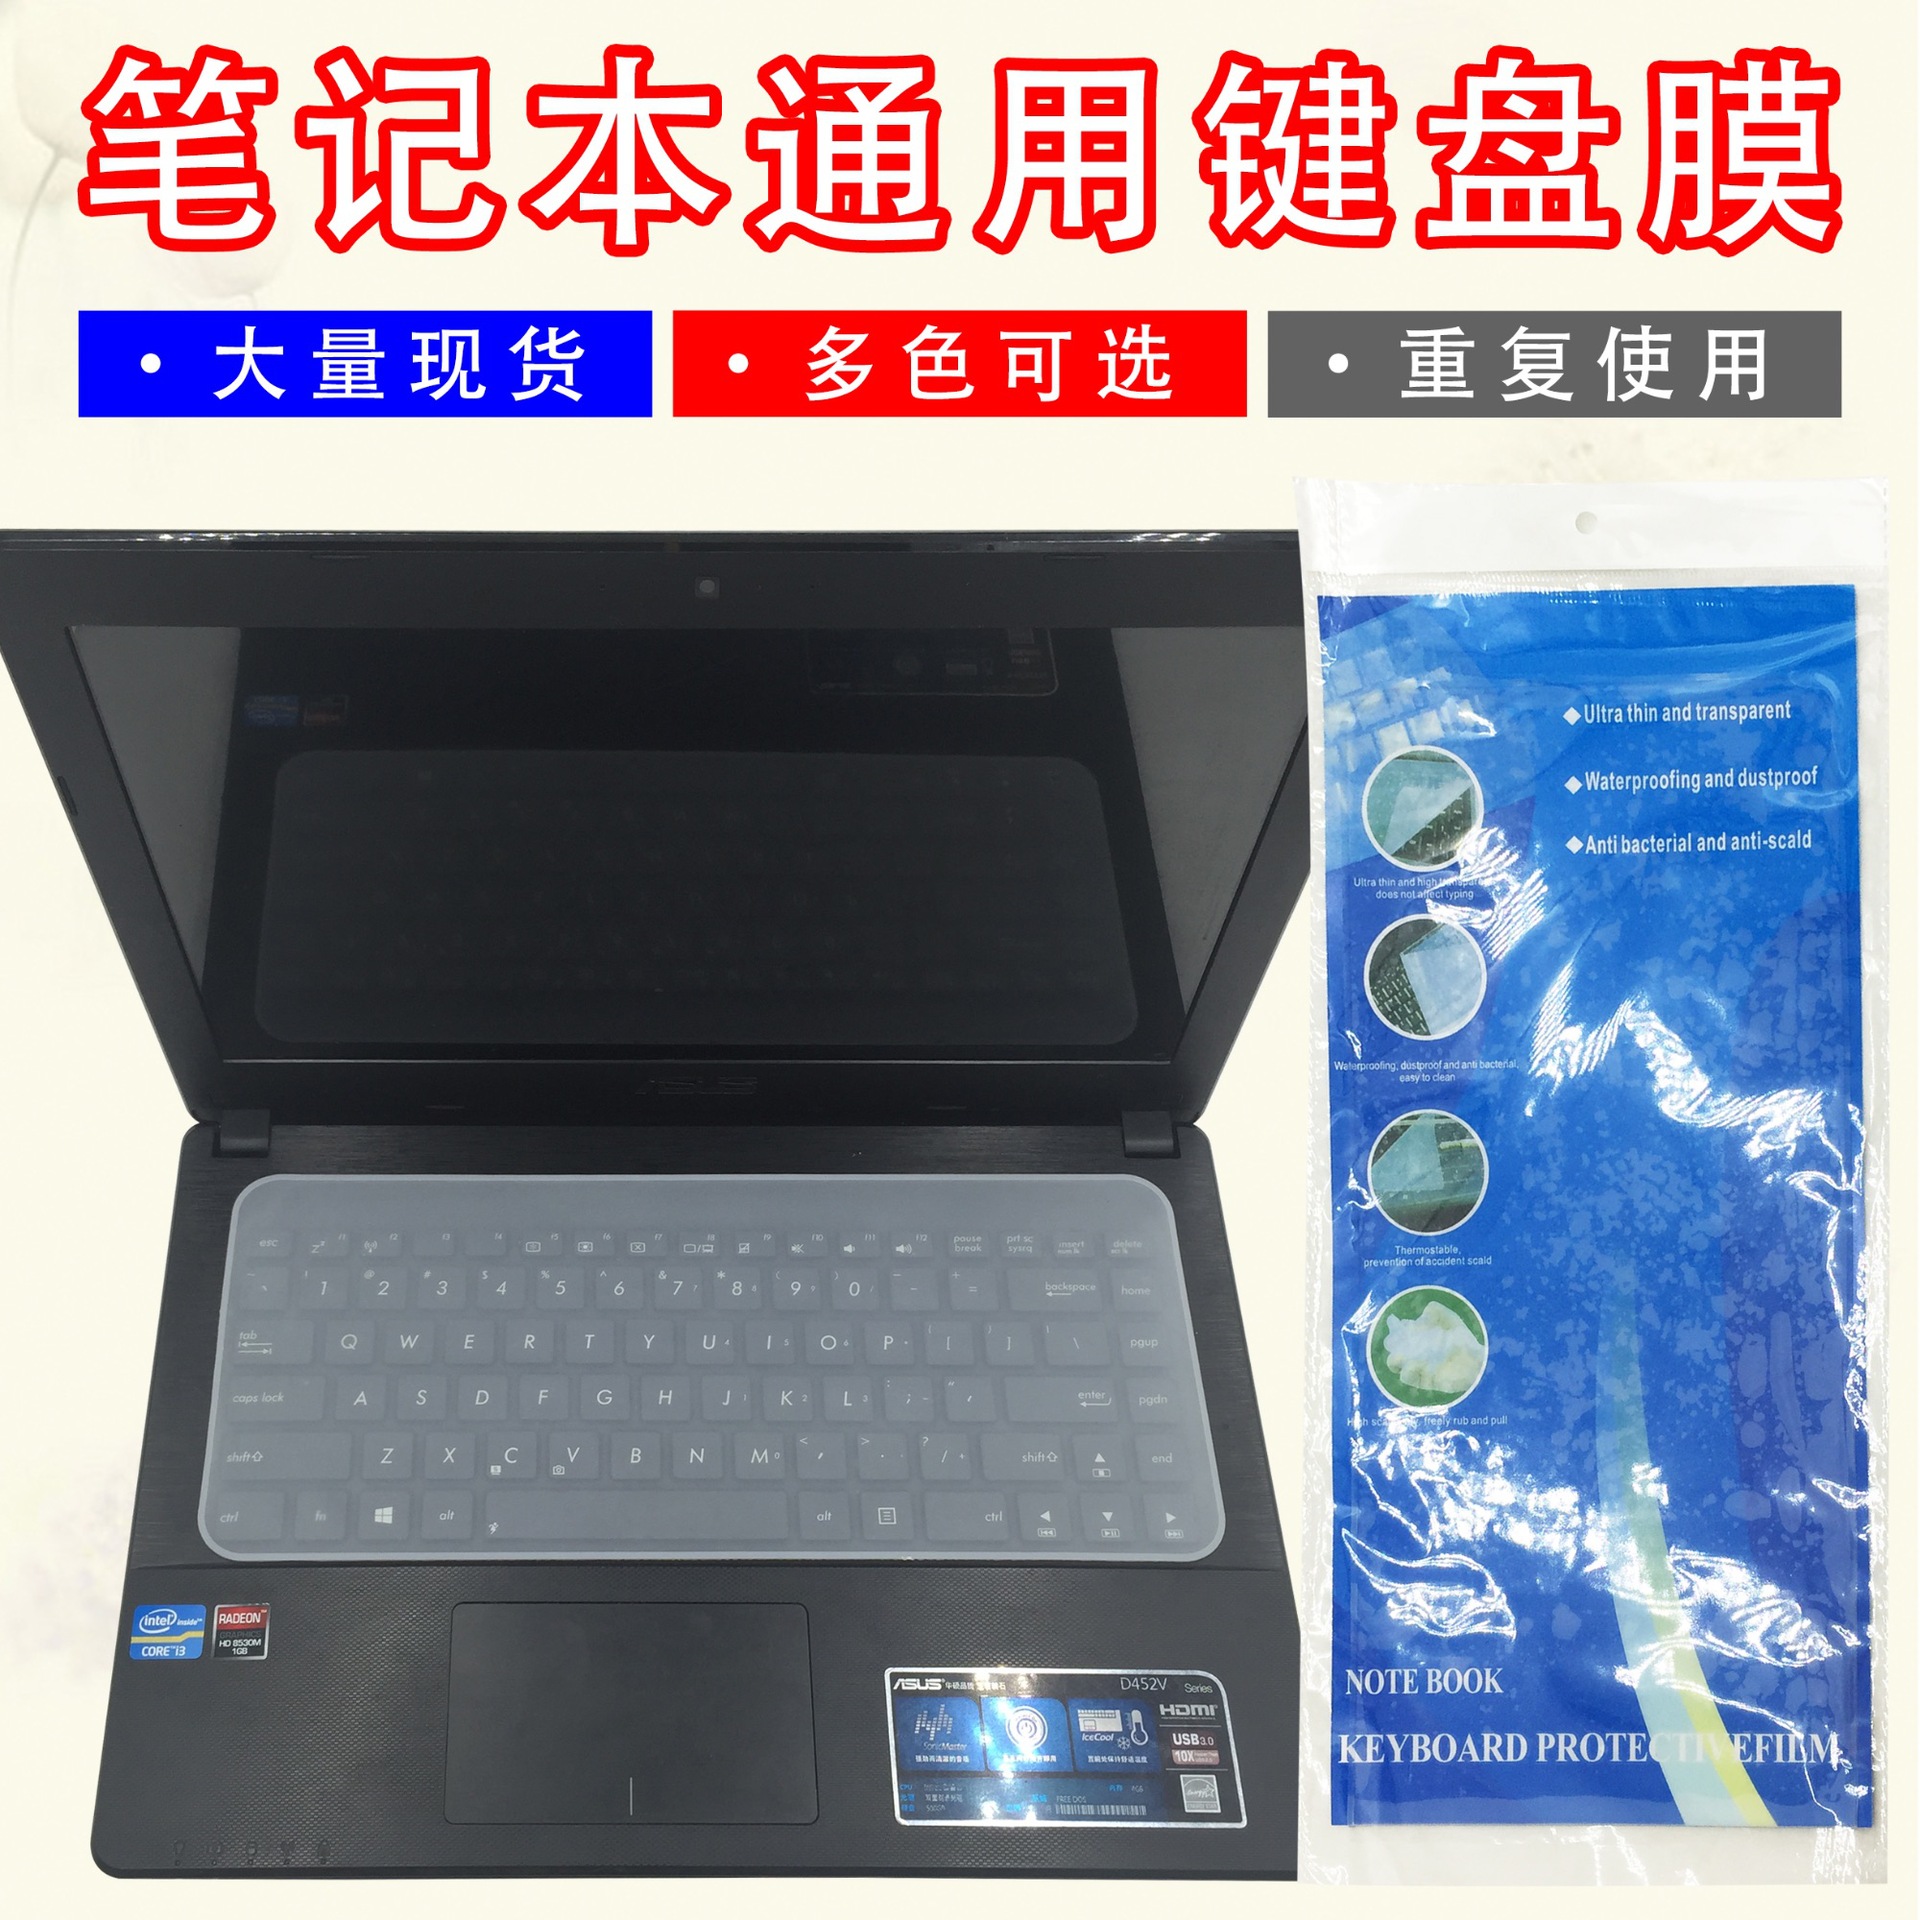 热卖笔记本电脑通用键盘膜 平铺台式机硅胶保护膜 卡通彩色凹凸款